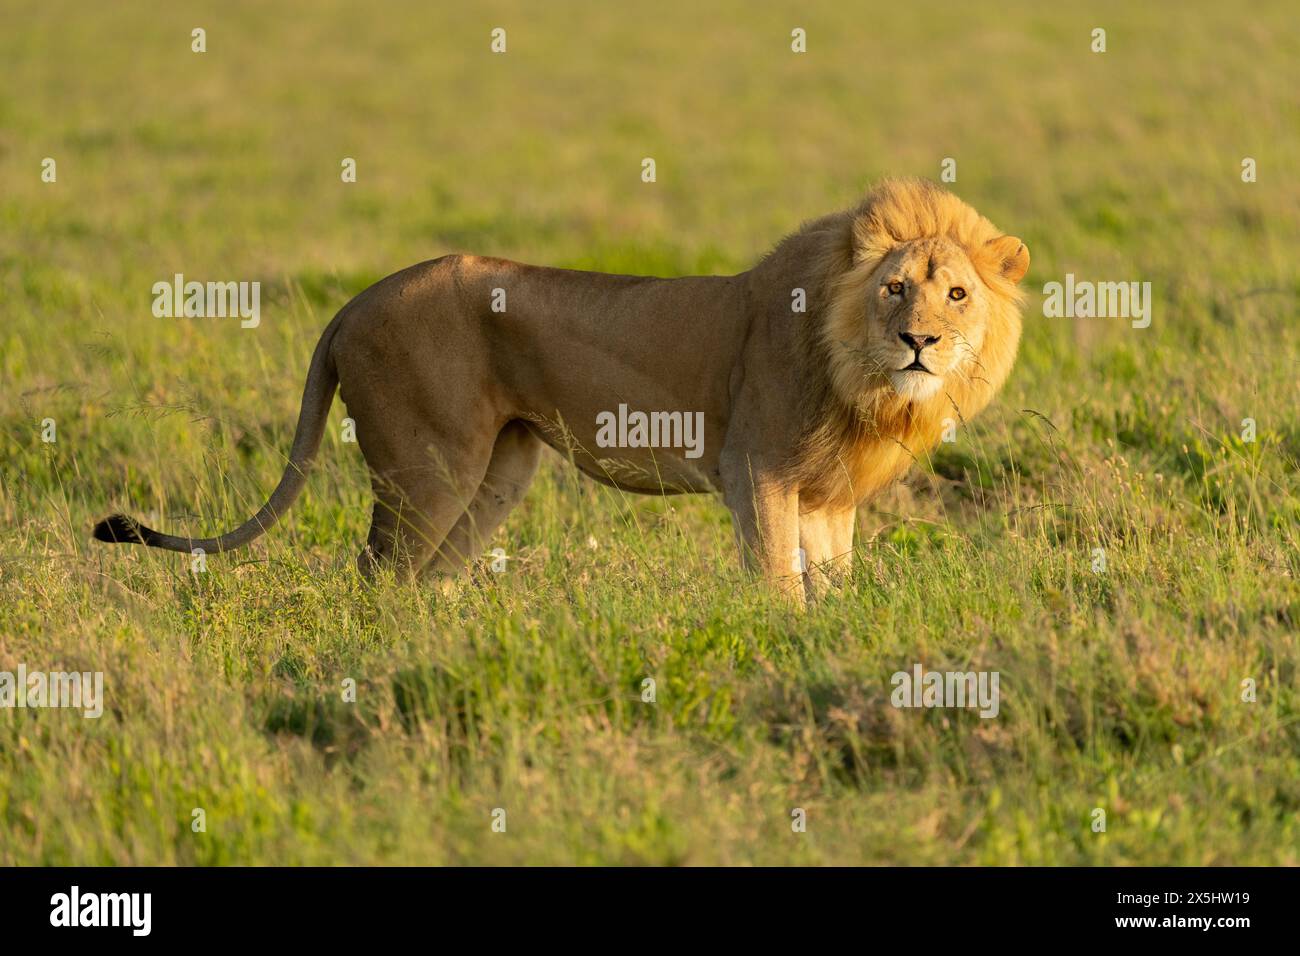 Afrique, Tanzanie. Portrait d'un lion mâle debout dans l'herbe courte. Banque D'Images